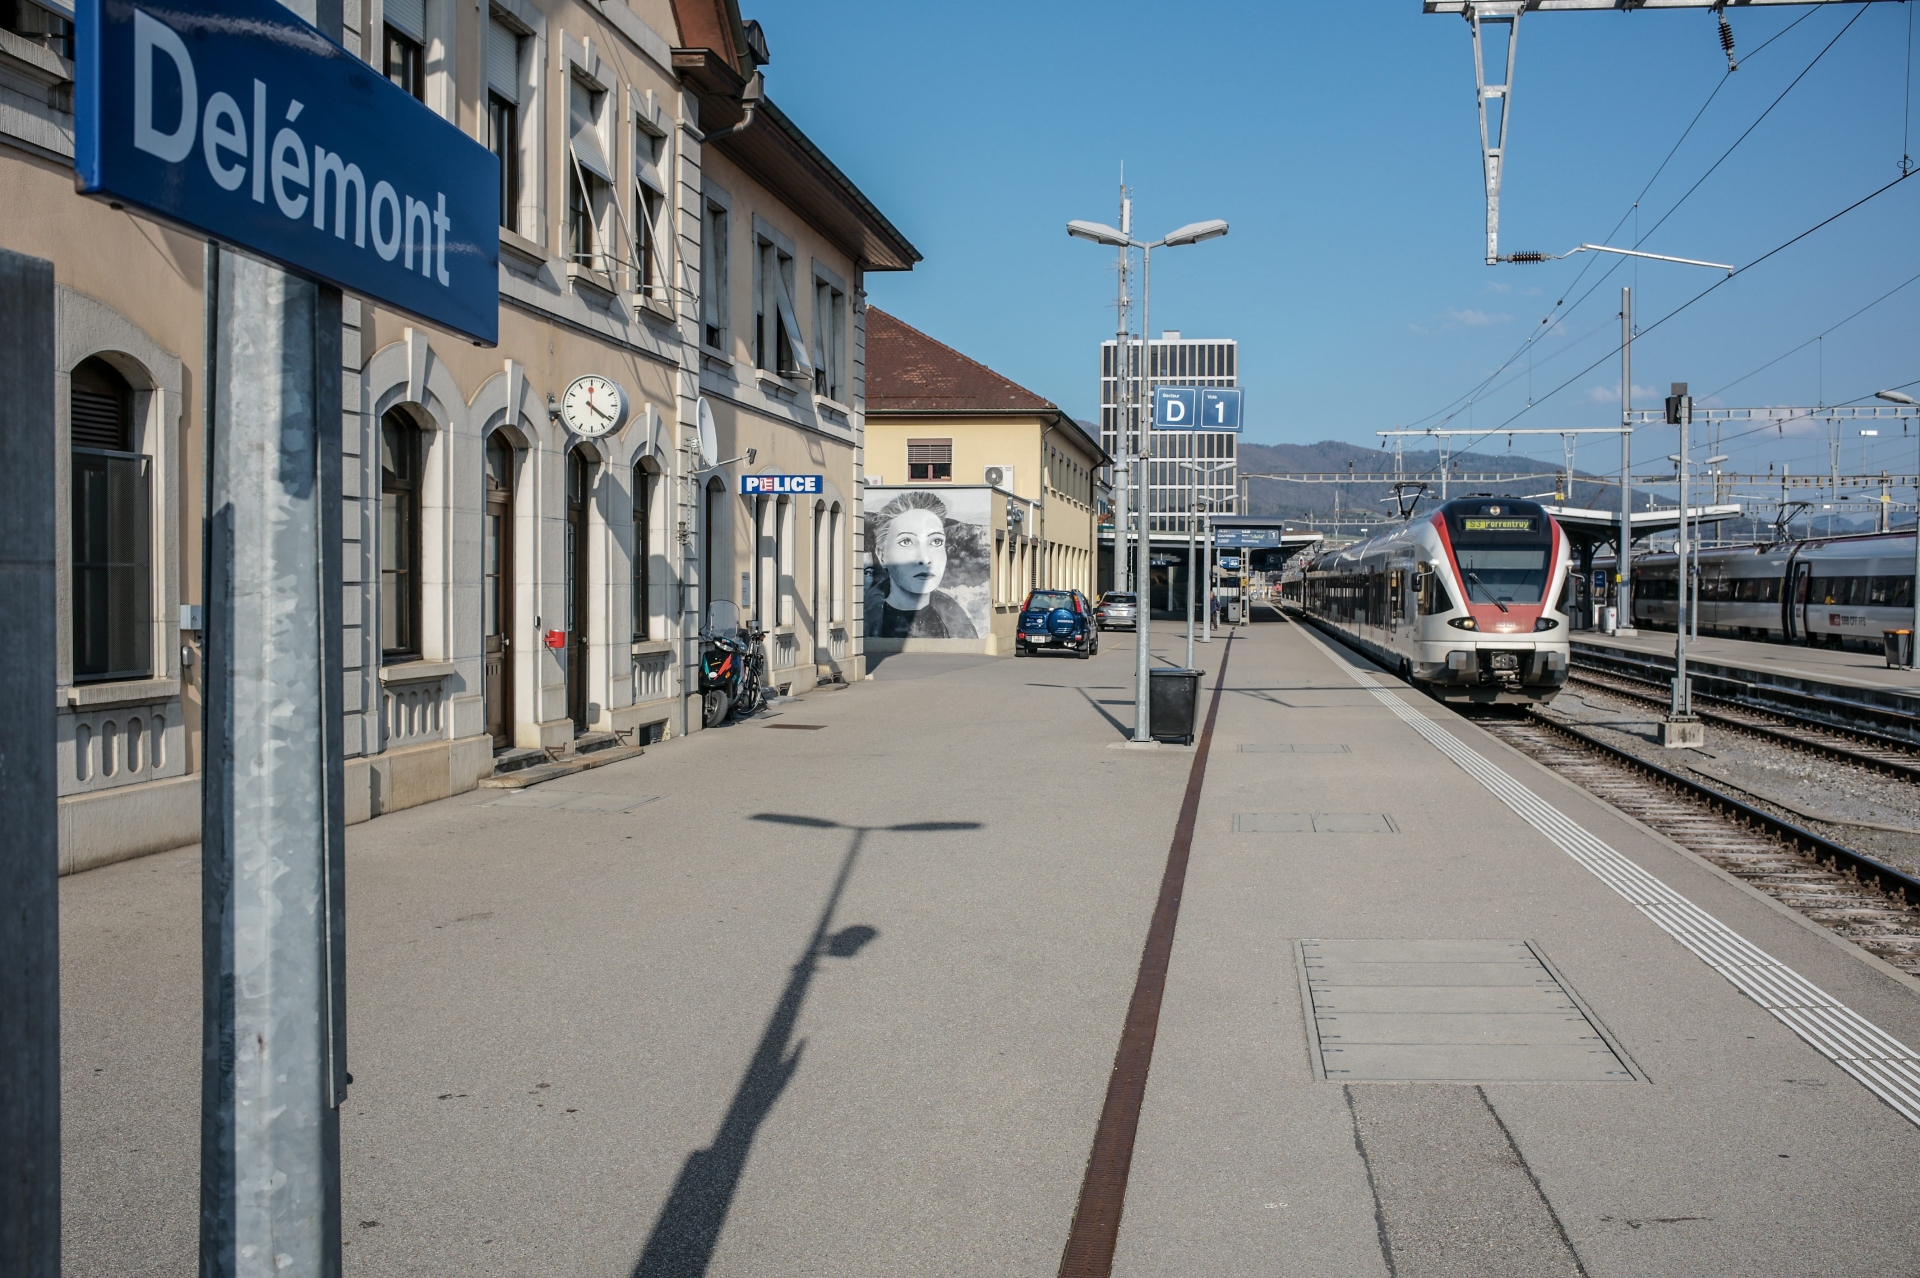 Le nouvel hôpital serait directement relié à la gare de Delémont (photo).